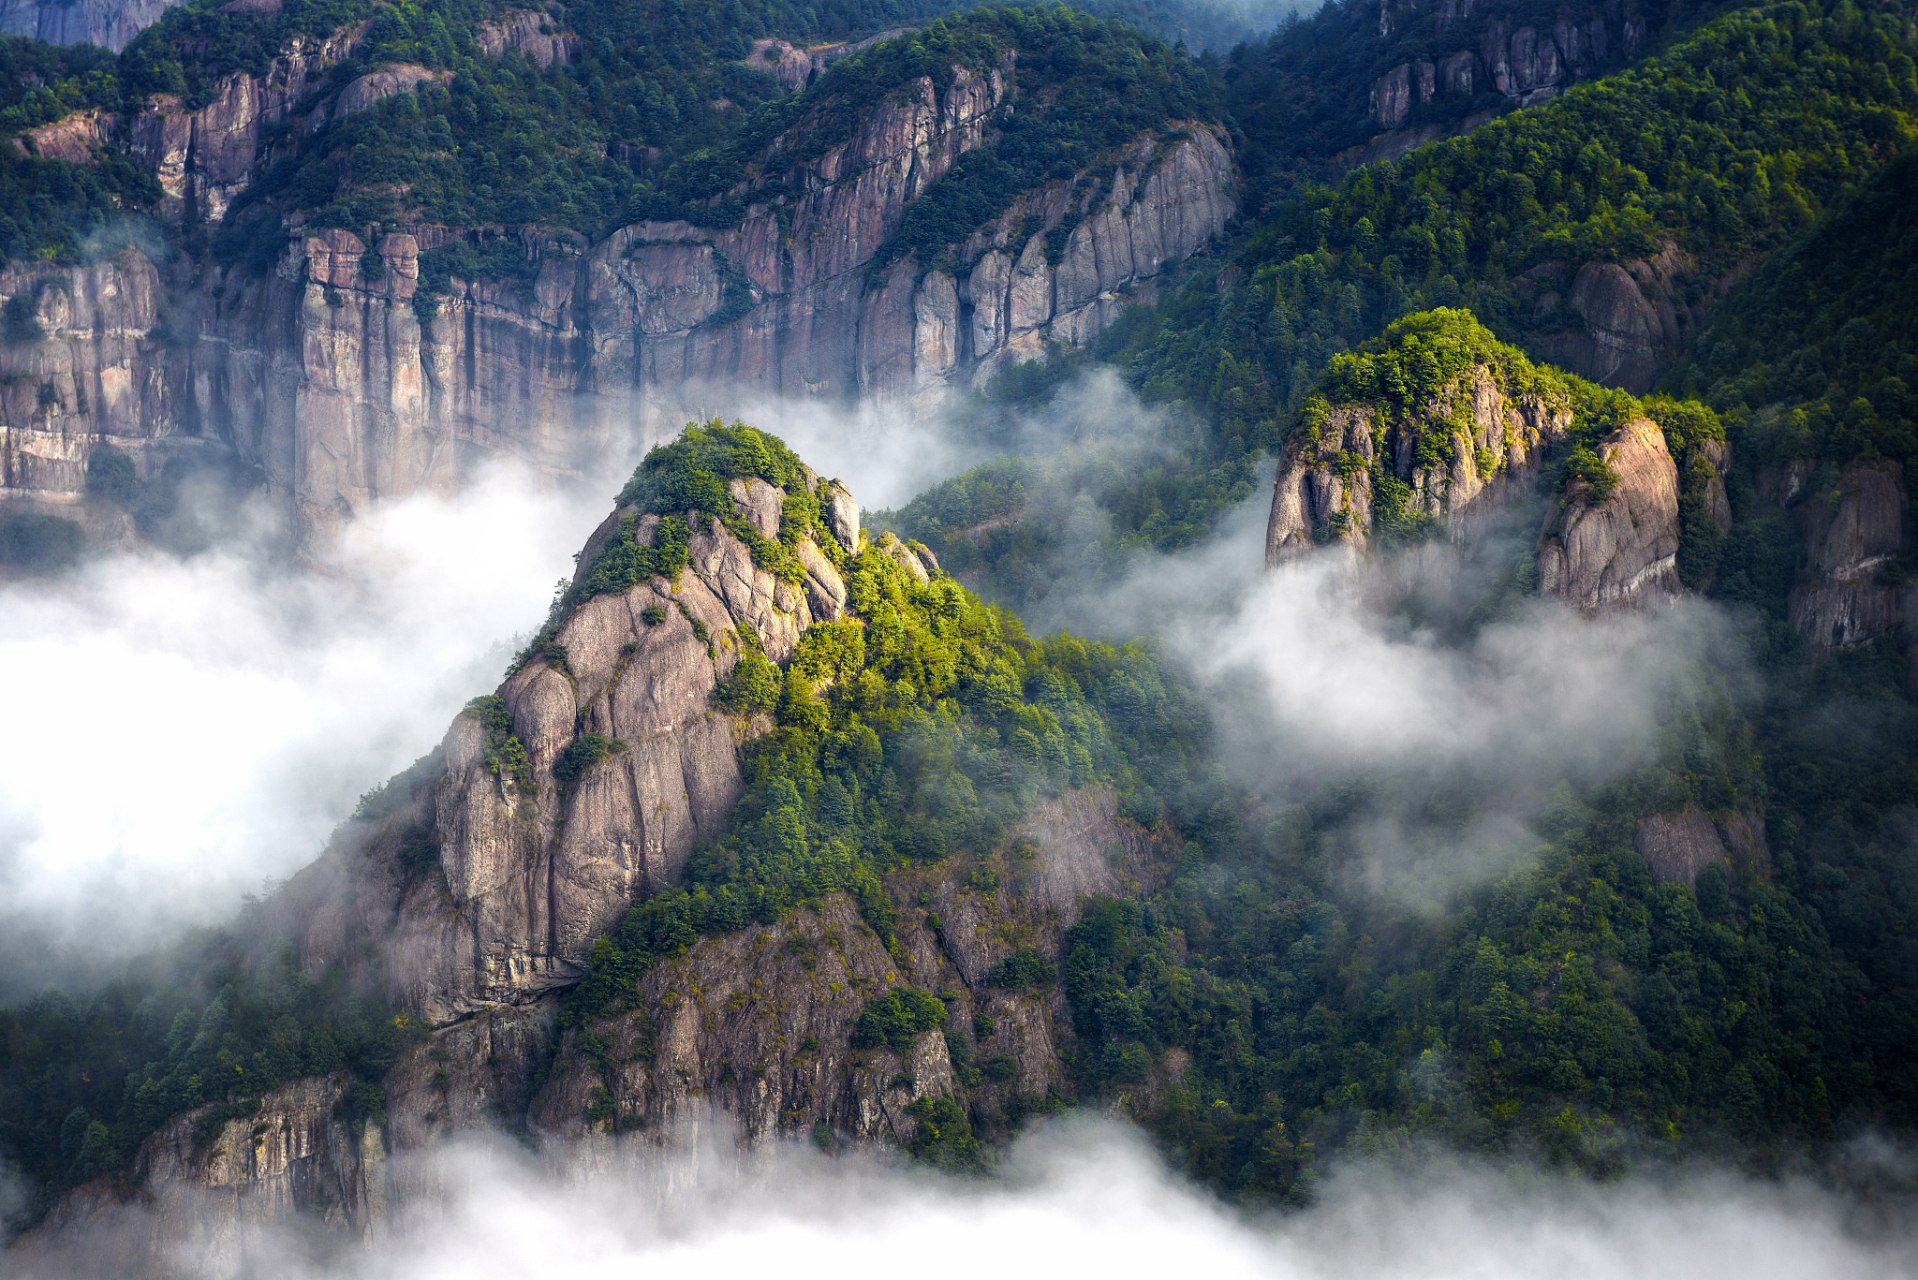 仙都景区 仙都景区位于浙江省丽水市缙云县,以其独特的峰岩,清澈的